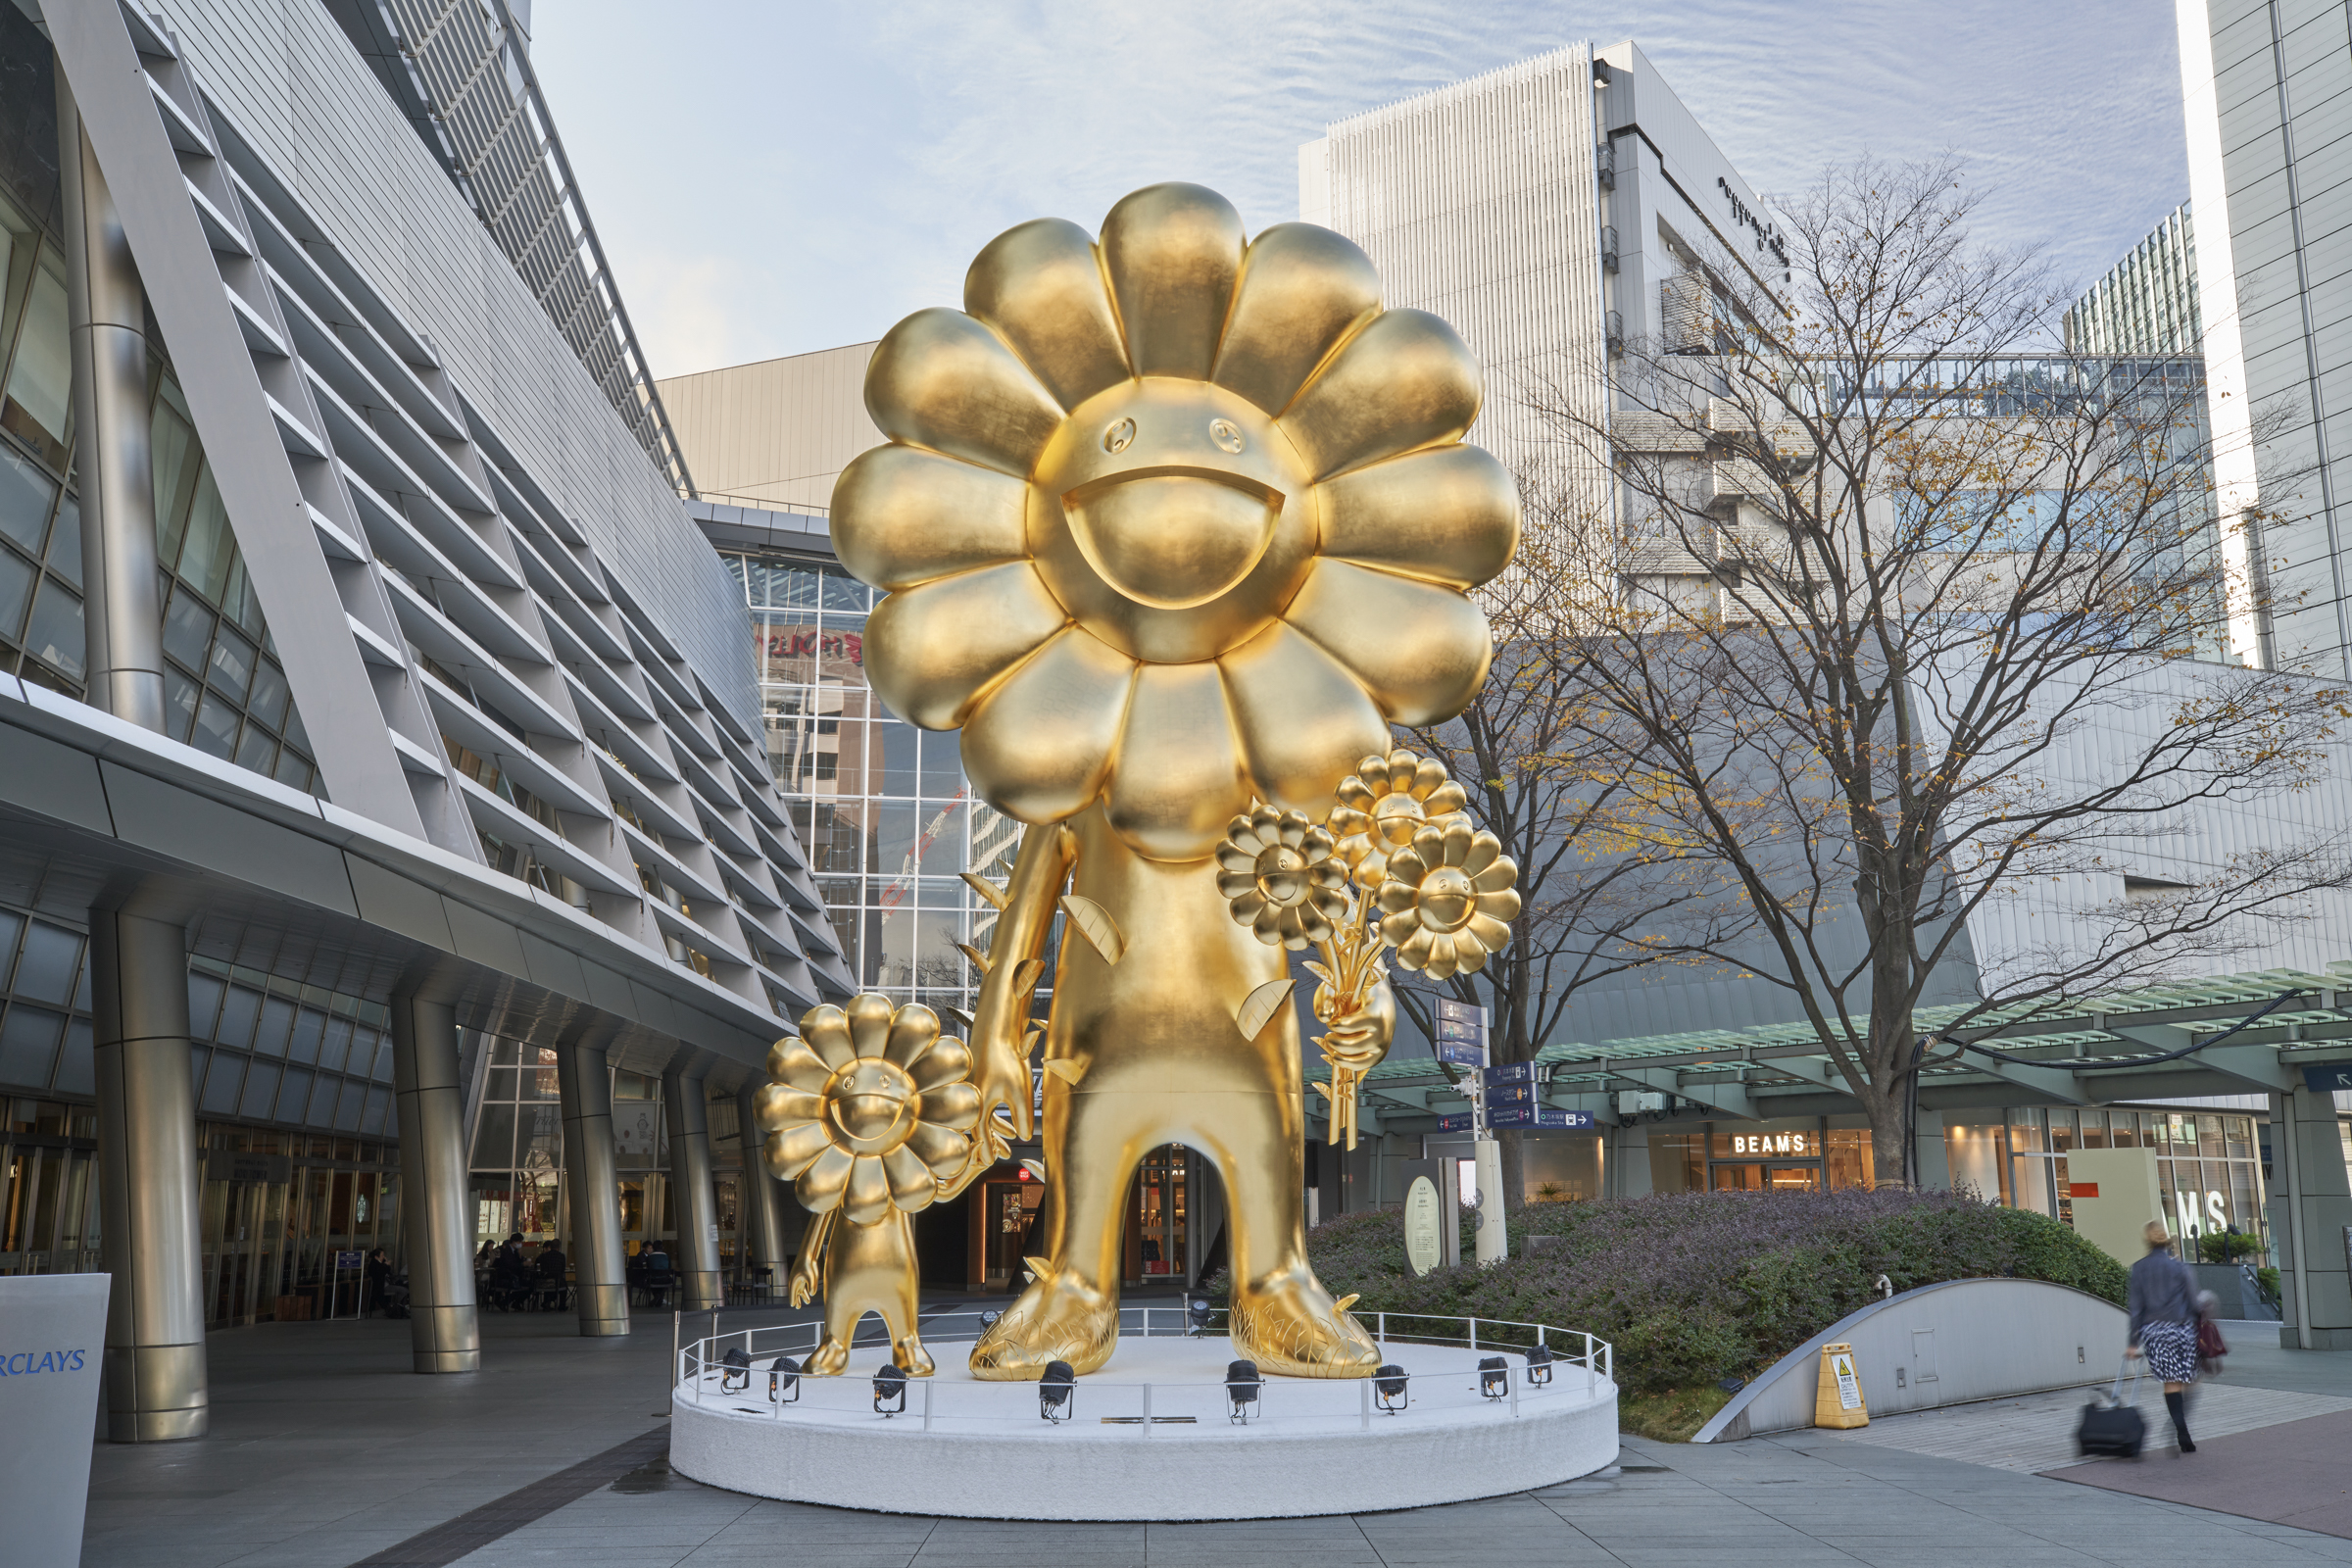 村上隆のお花が全長10mの巨大な彫刻作品に 六本木ヒルズで「お花の親子」を期間限定公開